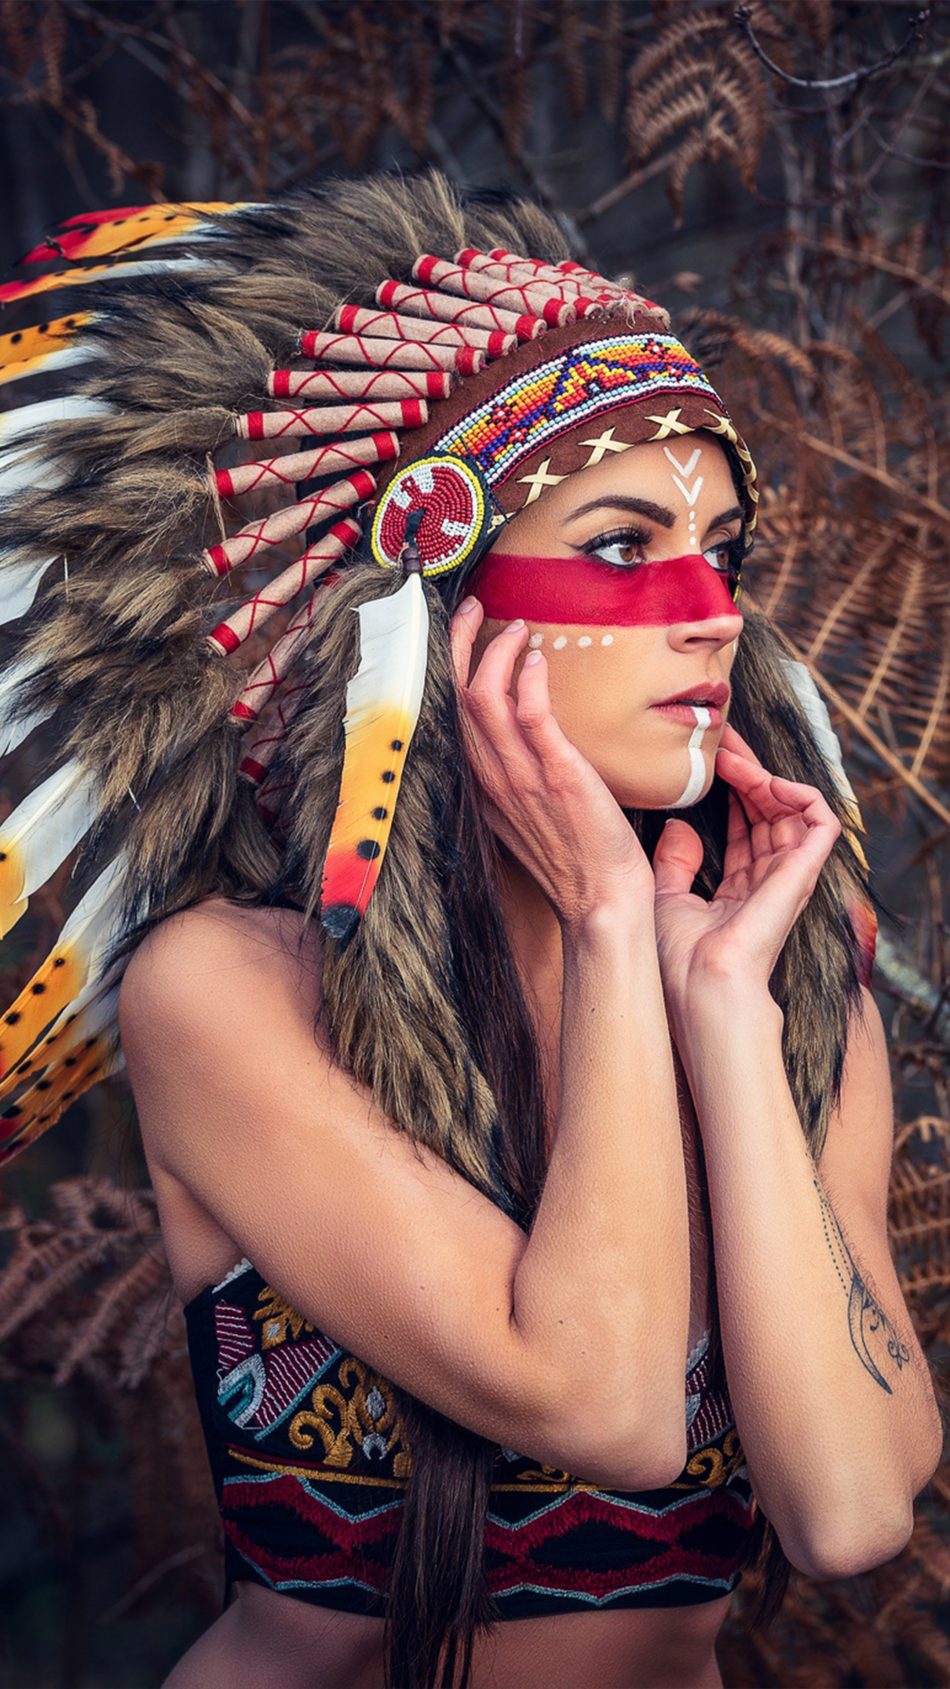 Girl Headdress Native American 4k Ultra Hd Mobile Wallpaper - Native American Girl Headdress - HD Wallpaper 